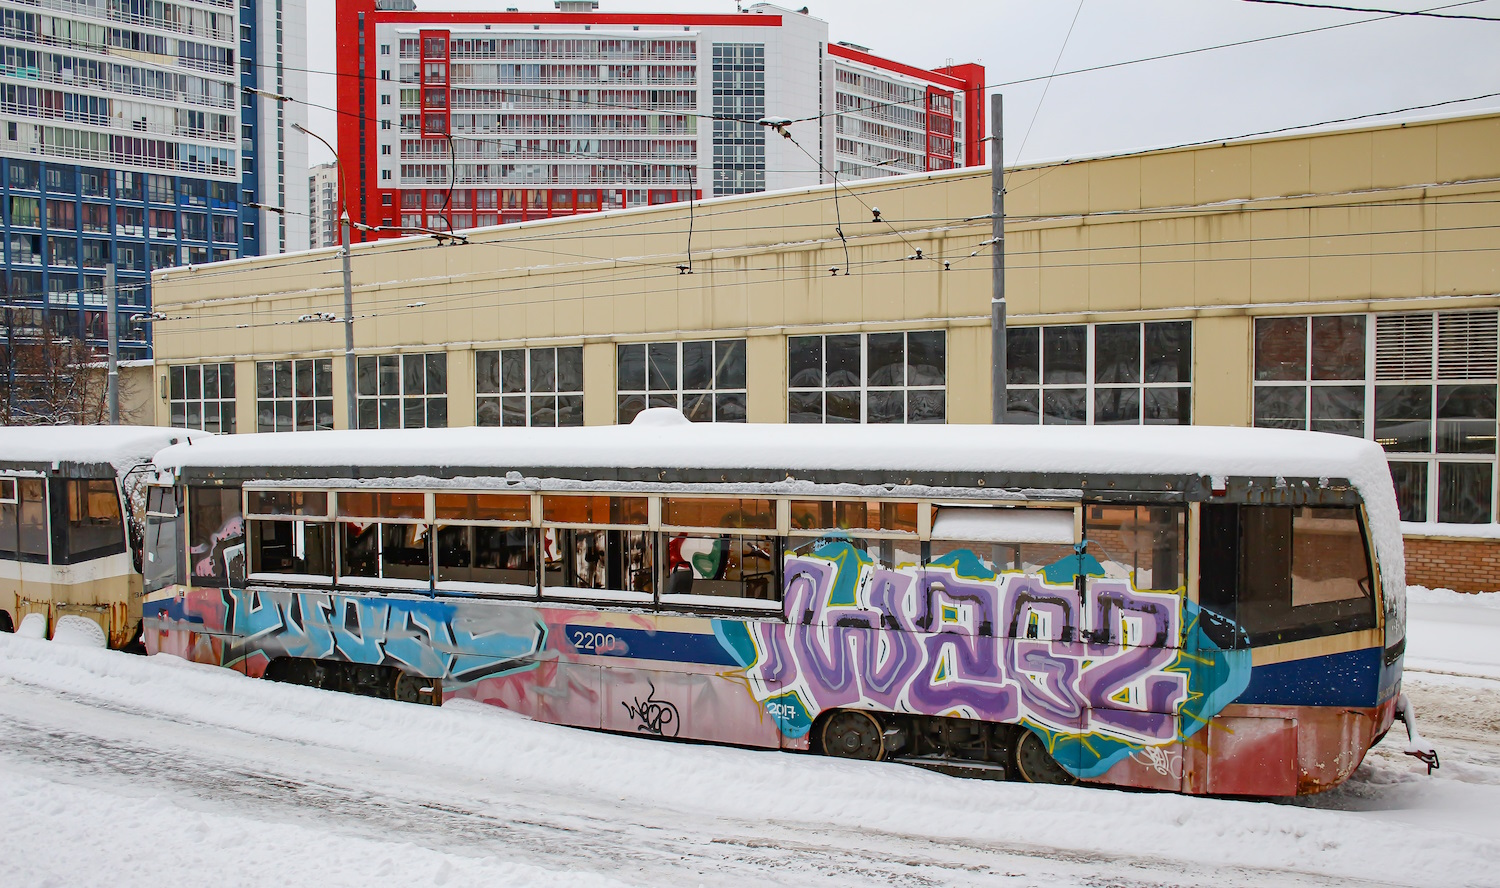 莫斯科, KTMA # 2200; 莫斯科 — Tram depots: [3] Krasnopresnenskoye. New site in Strogino